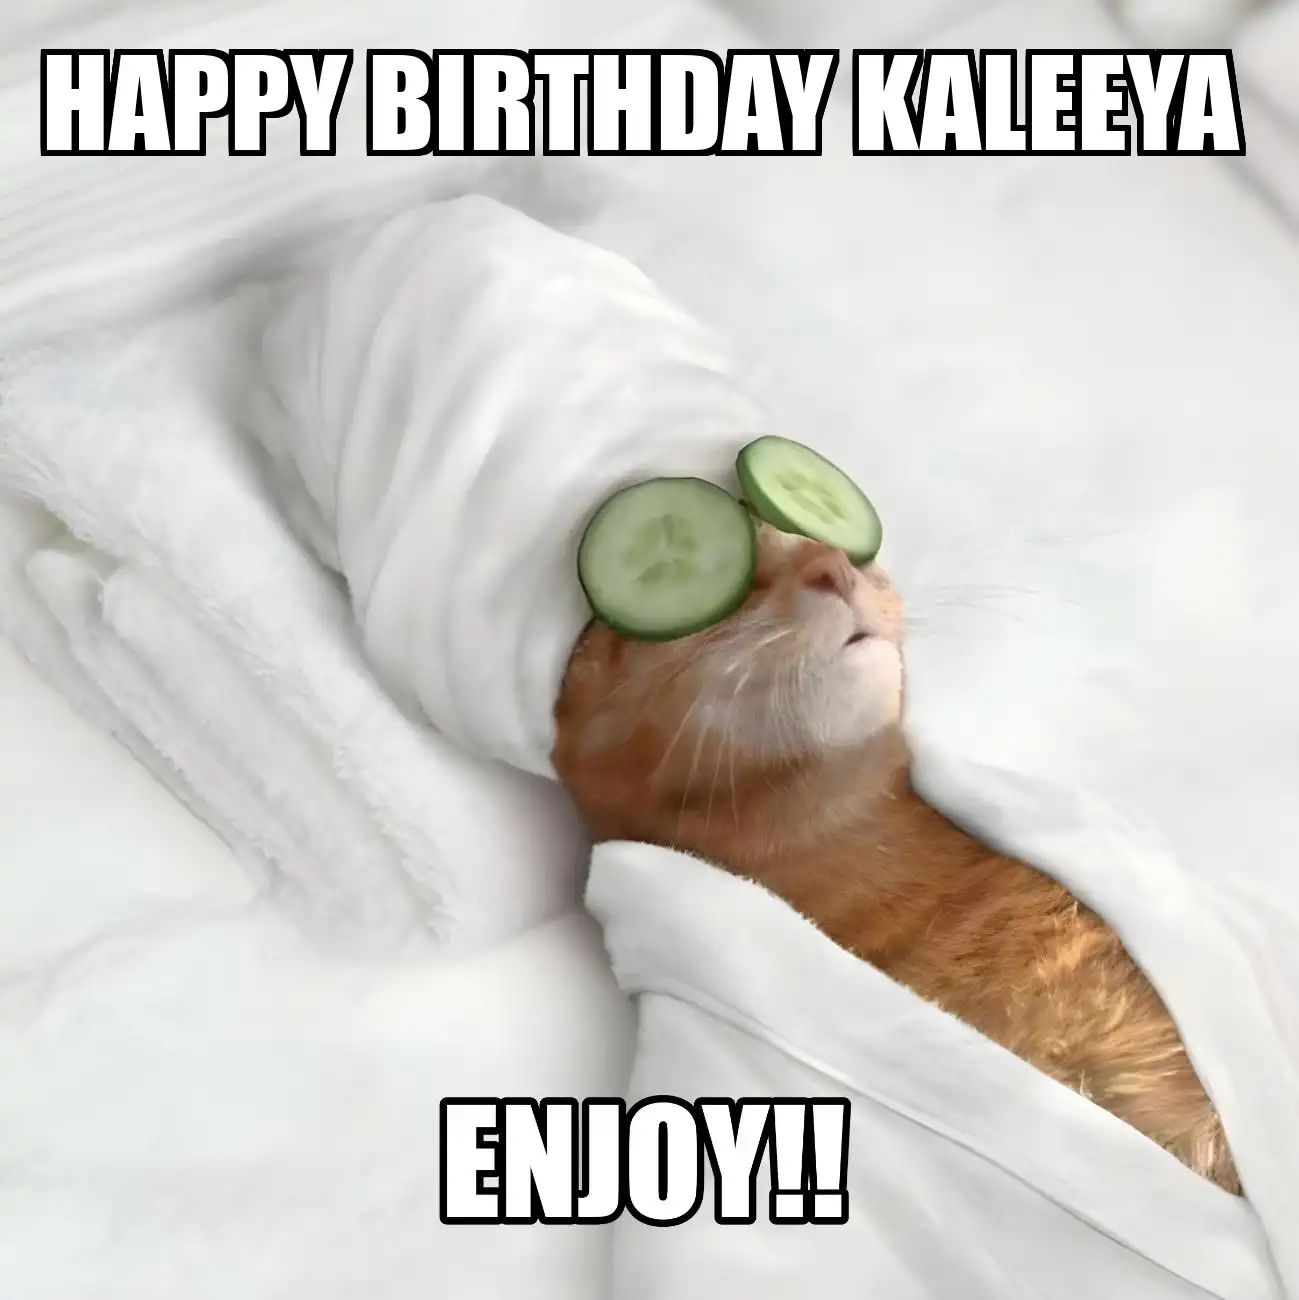 Happy Birthday Kaleeya Enjoy Cat Meme